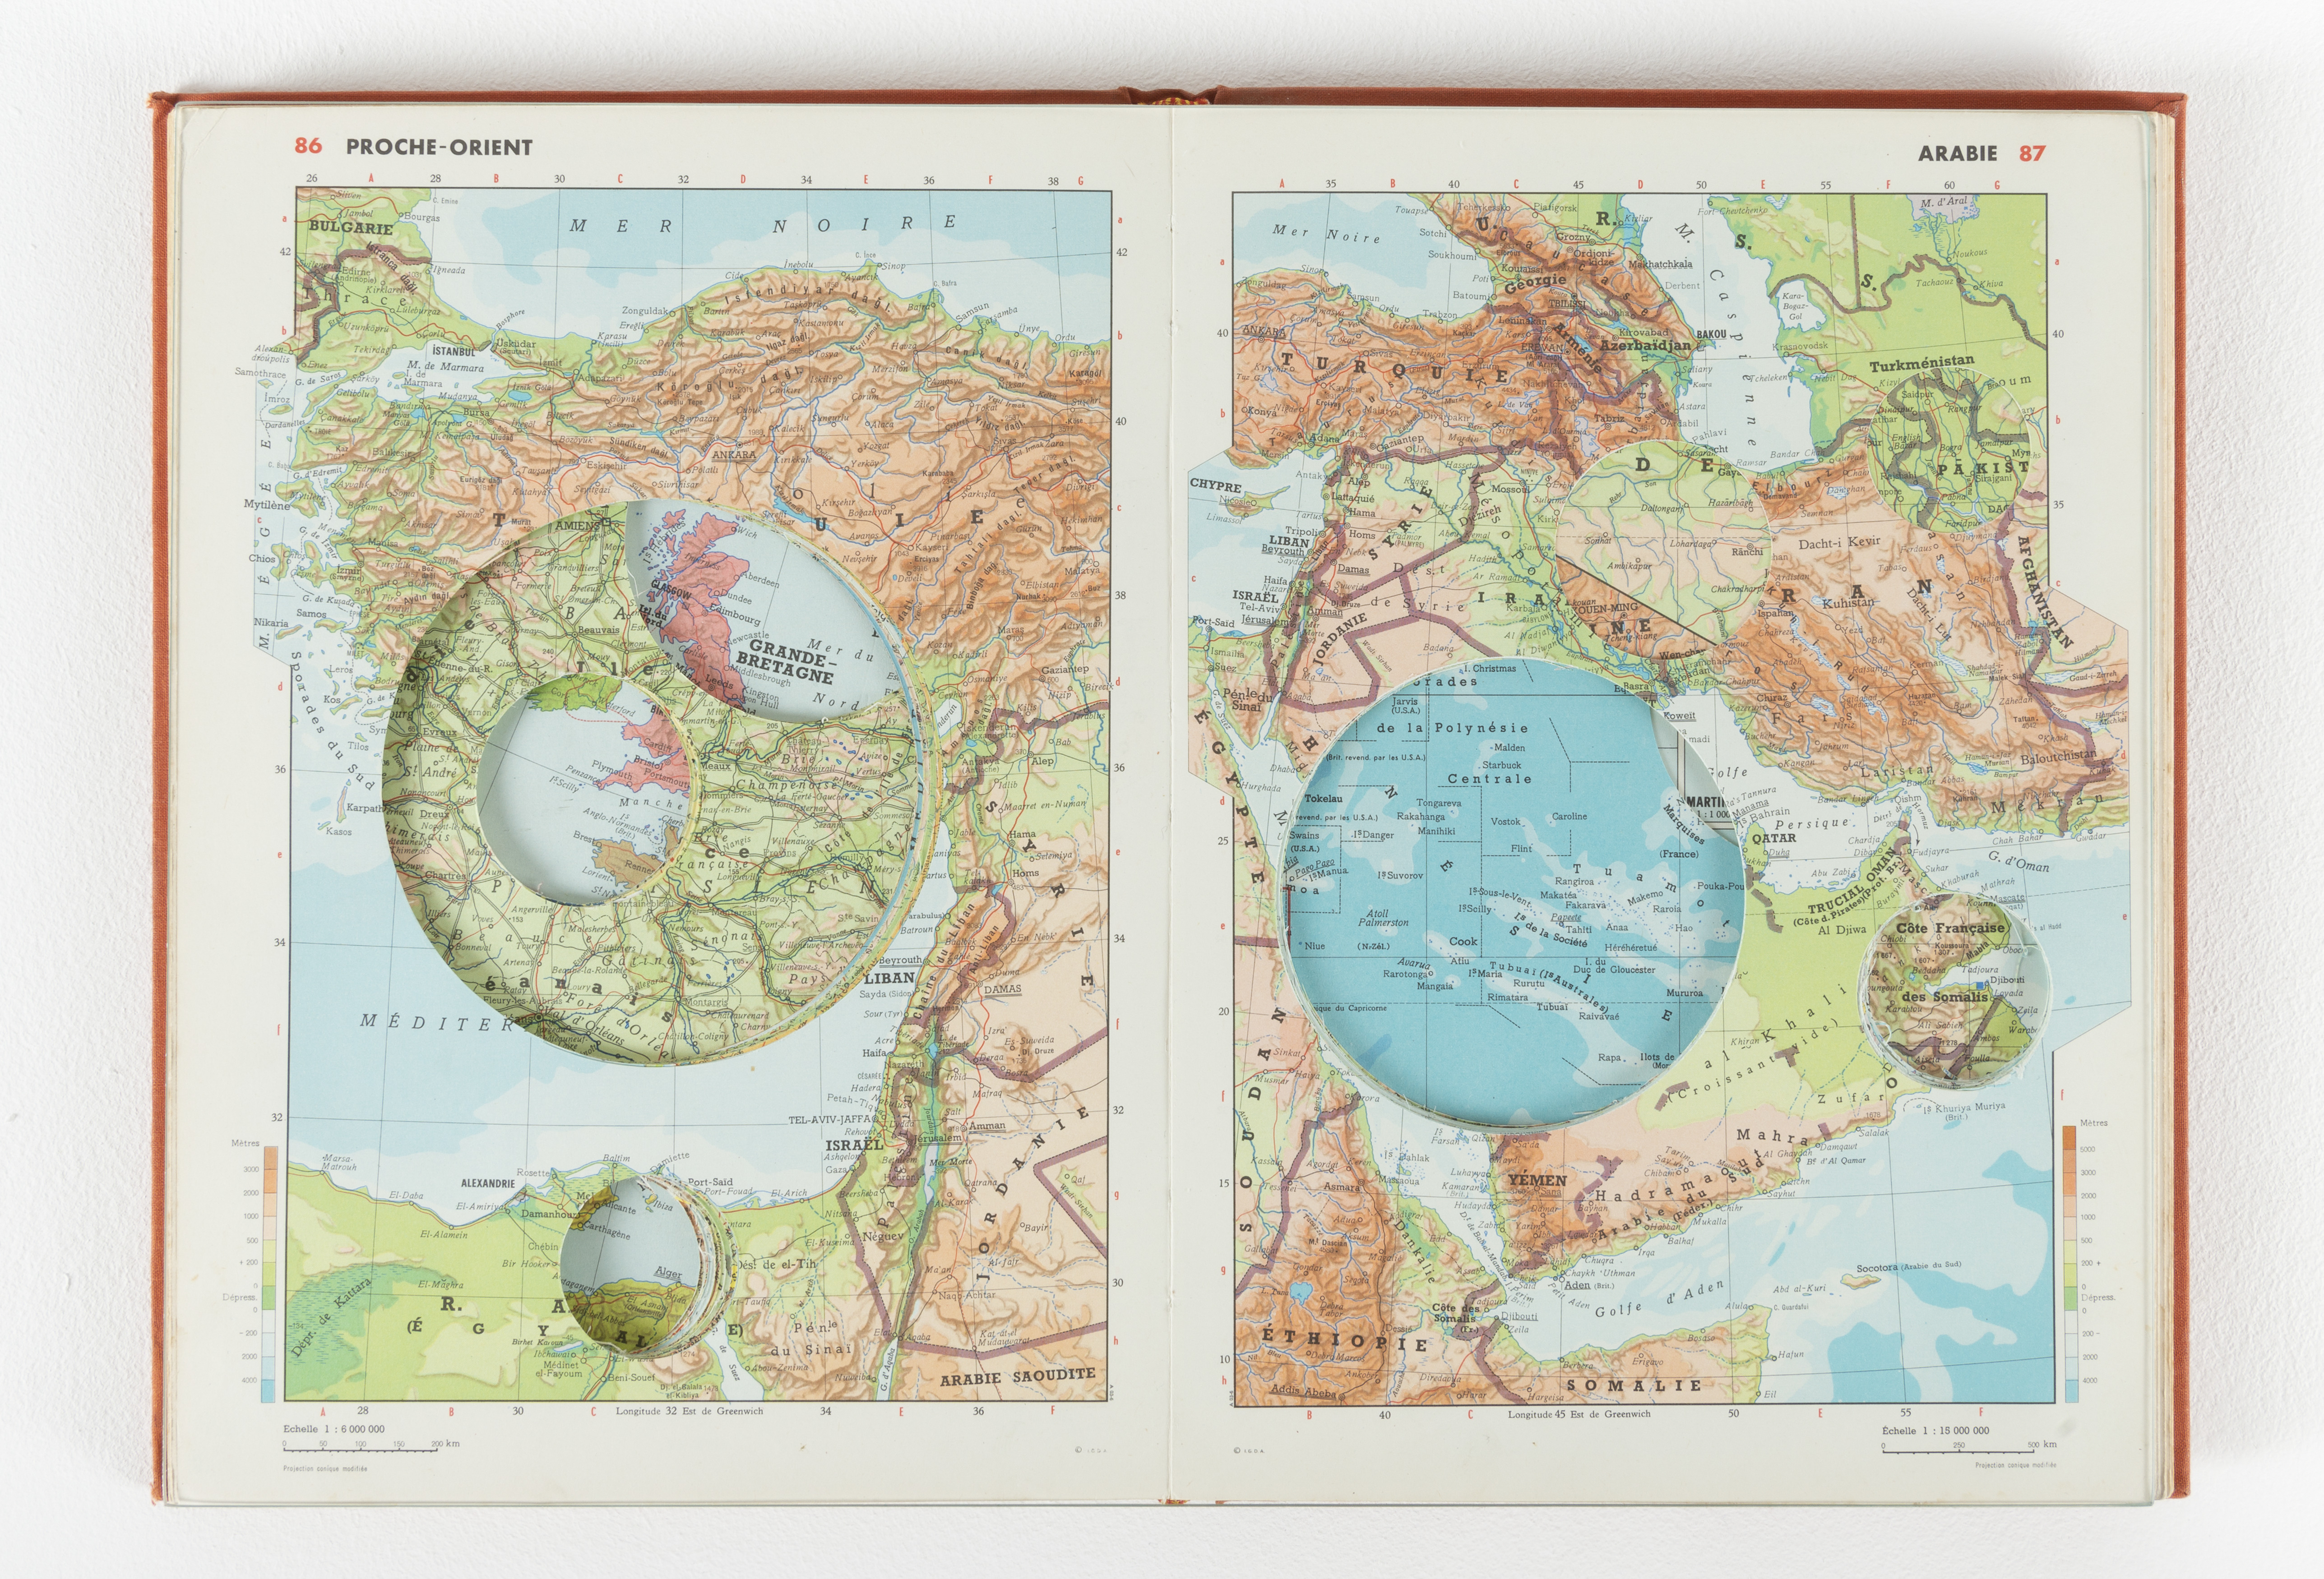 Cartes et figures du monde : recherches en histoire de la